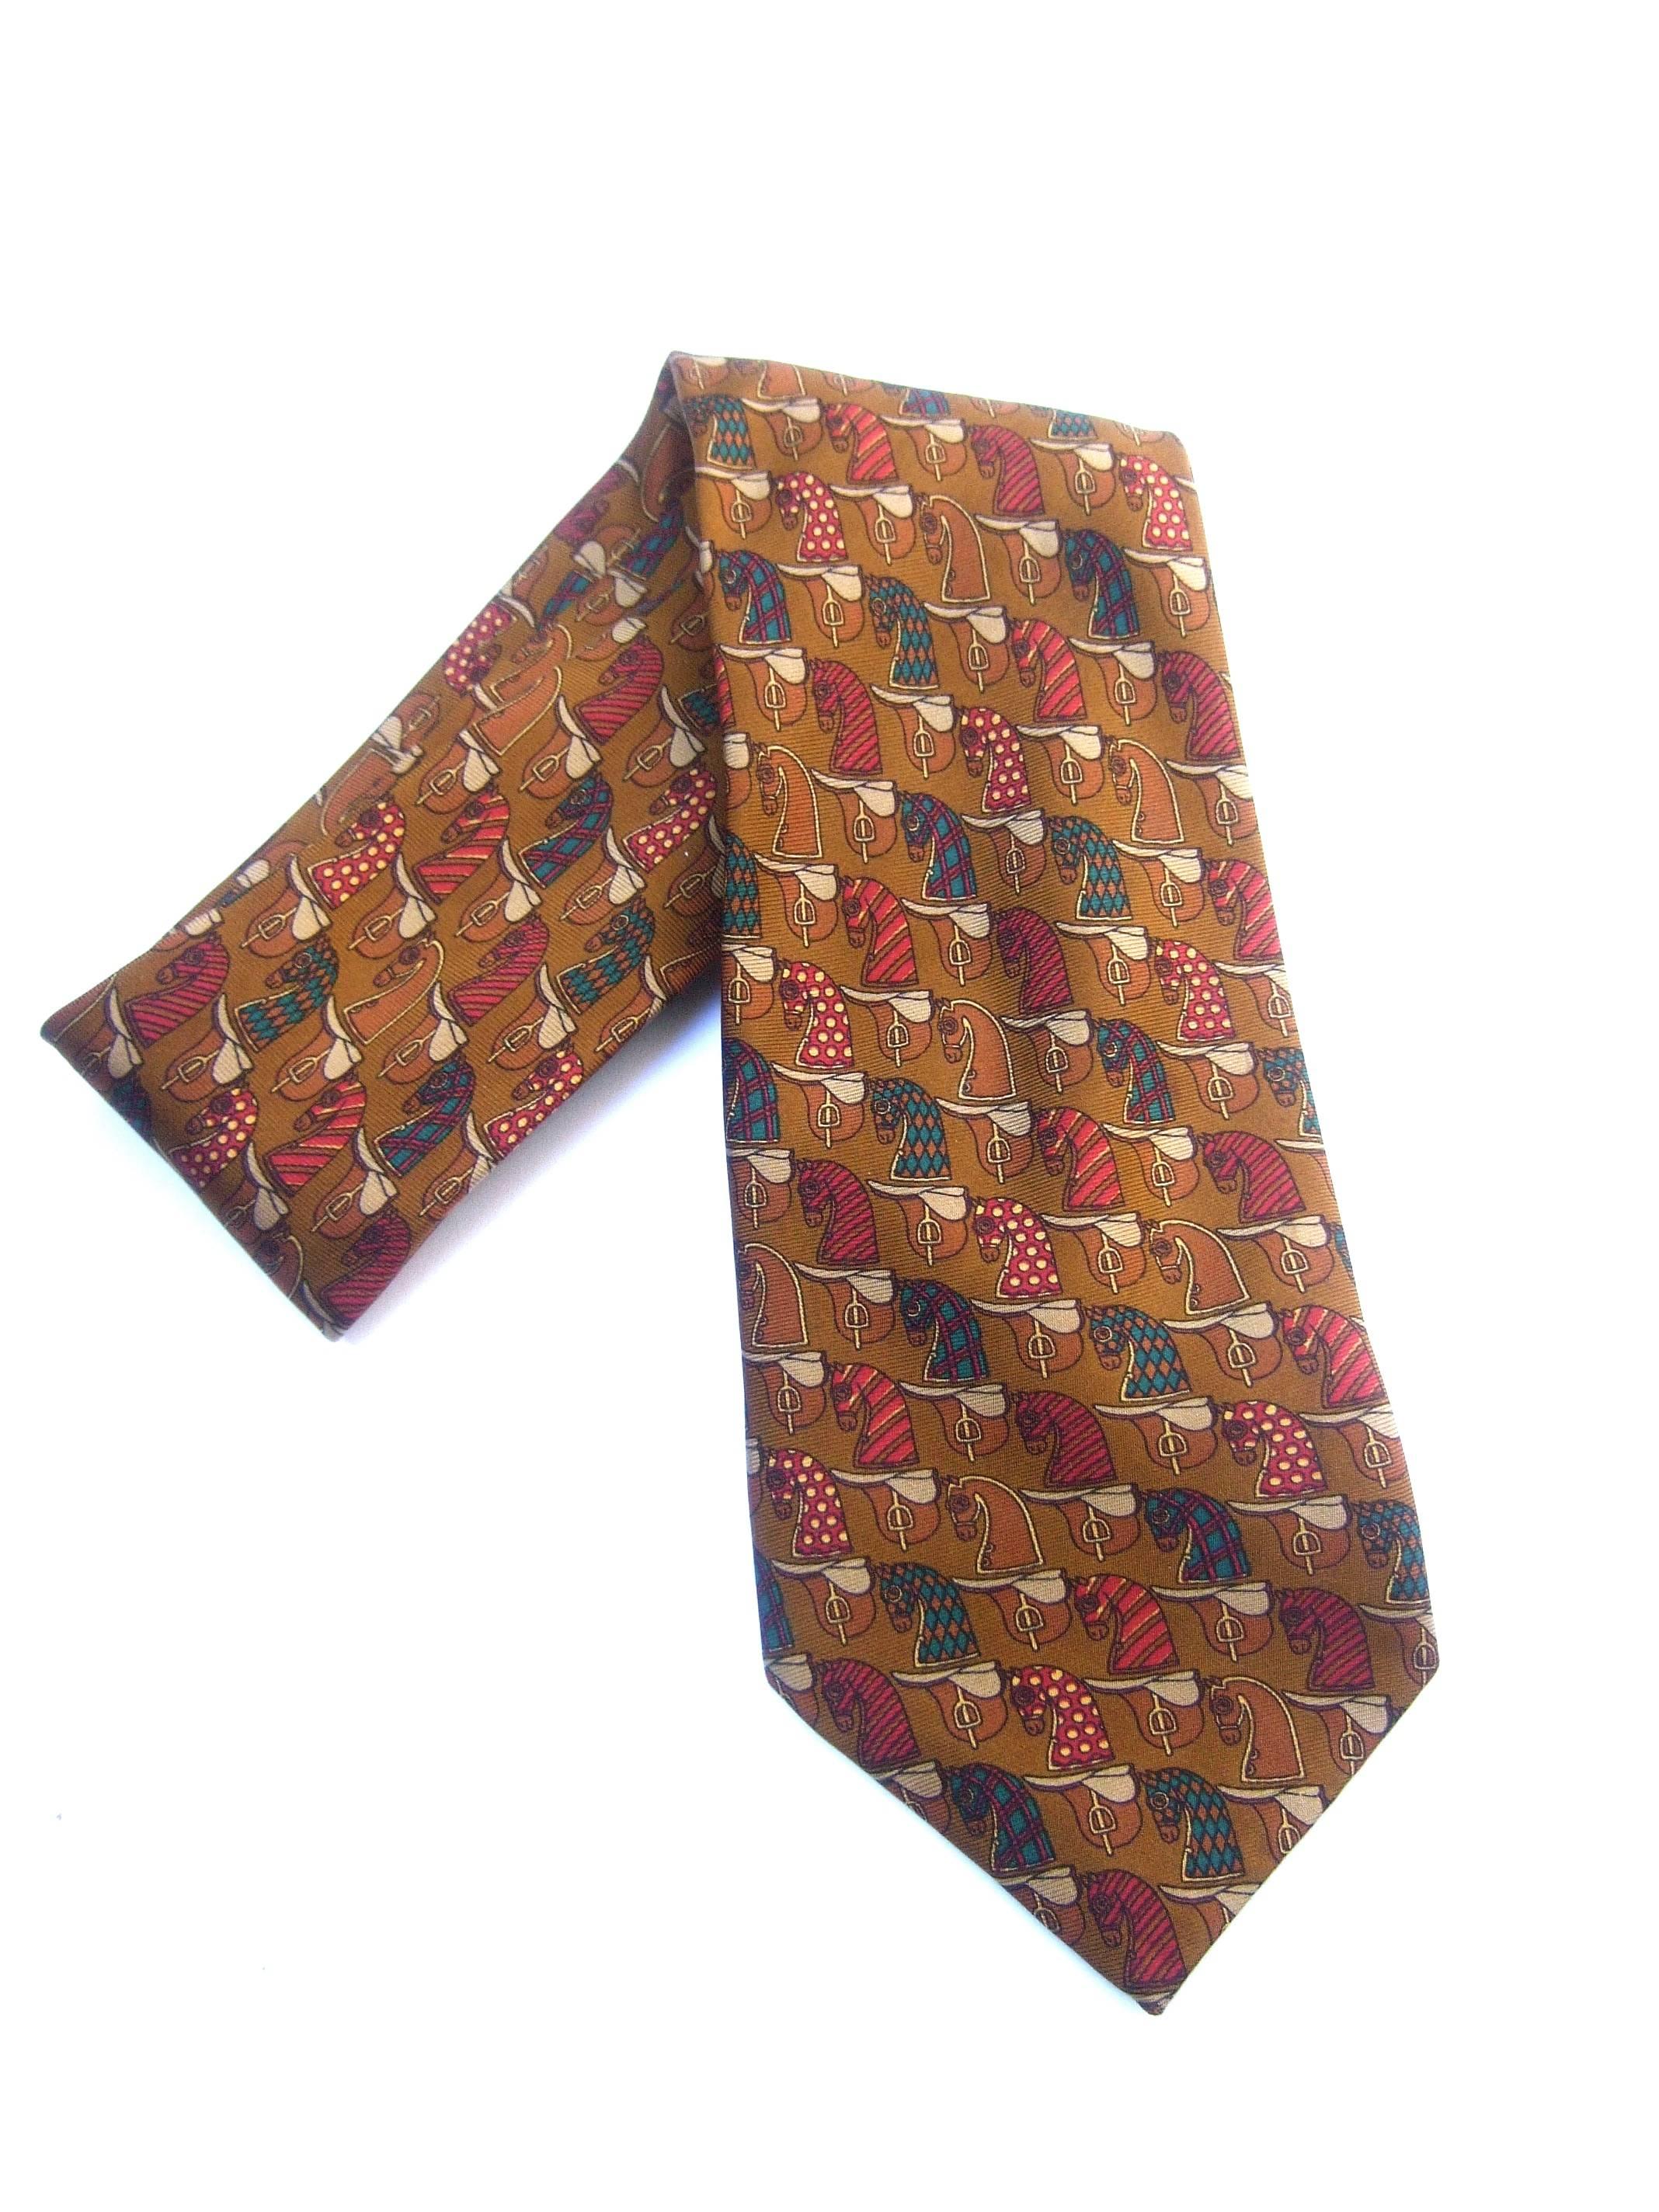 Burberry's Copper Silk Equestrian Theme Silk Necktie circa 1990s For Sale 1